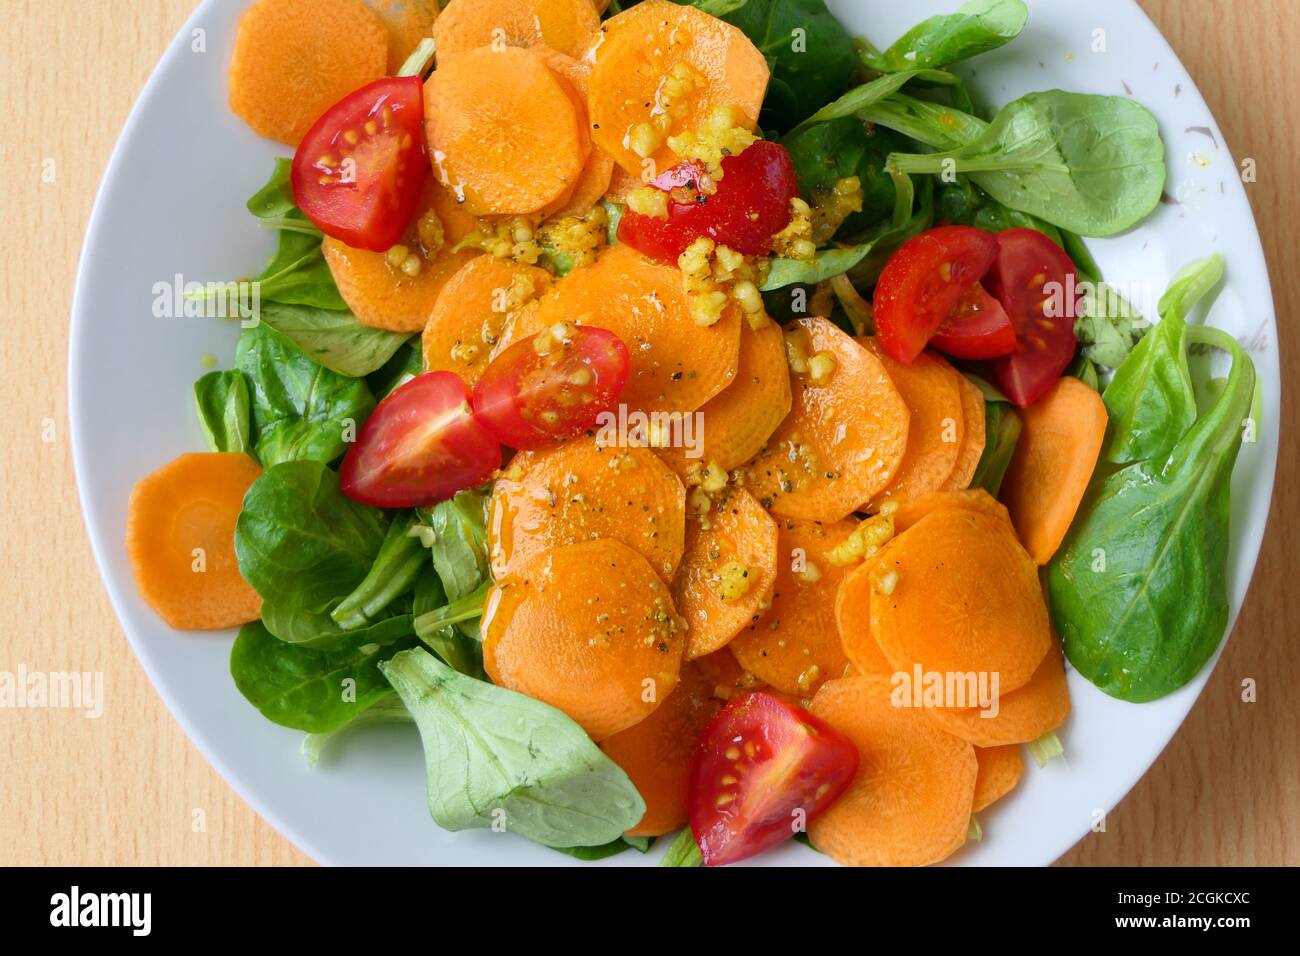 Luftaufnahme eines gesunden vegetarischen hausgemachten Salats mit Nusssalat oder Lammsalat, Karottenscheiben, Tomaten und Knoblauch auf einem weißen Teller Stockfoto